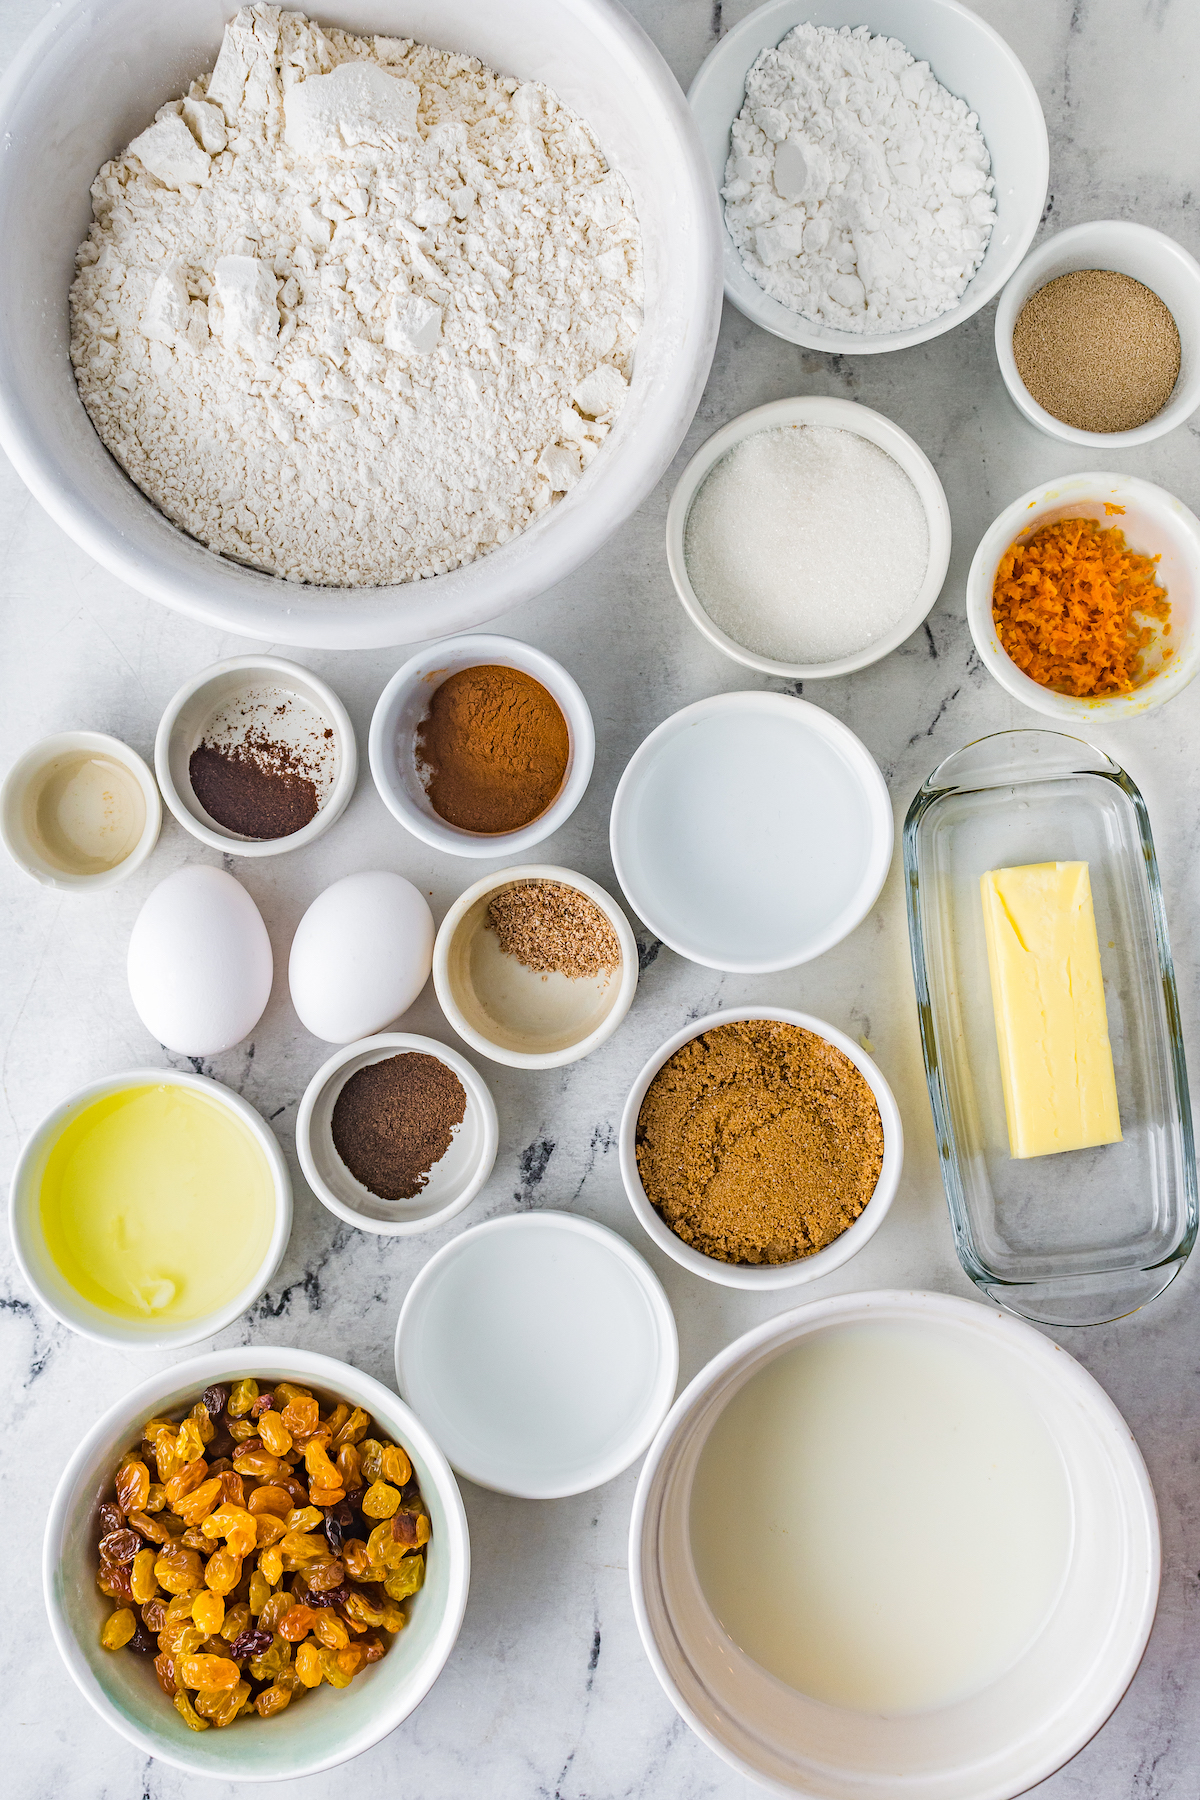 From top left: Flour, confectioner's sugar, yeast, granulated sugar, orange zest, vanilla, allspice, cinnamon, milk, butter, eggs, allspice, brown sugar, golden raisins, rum, water.